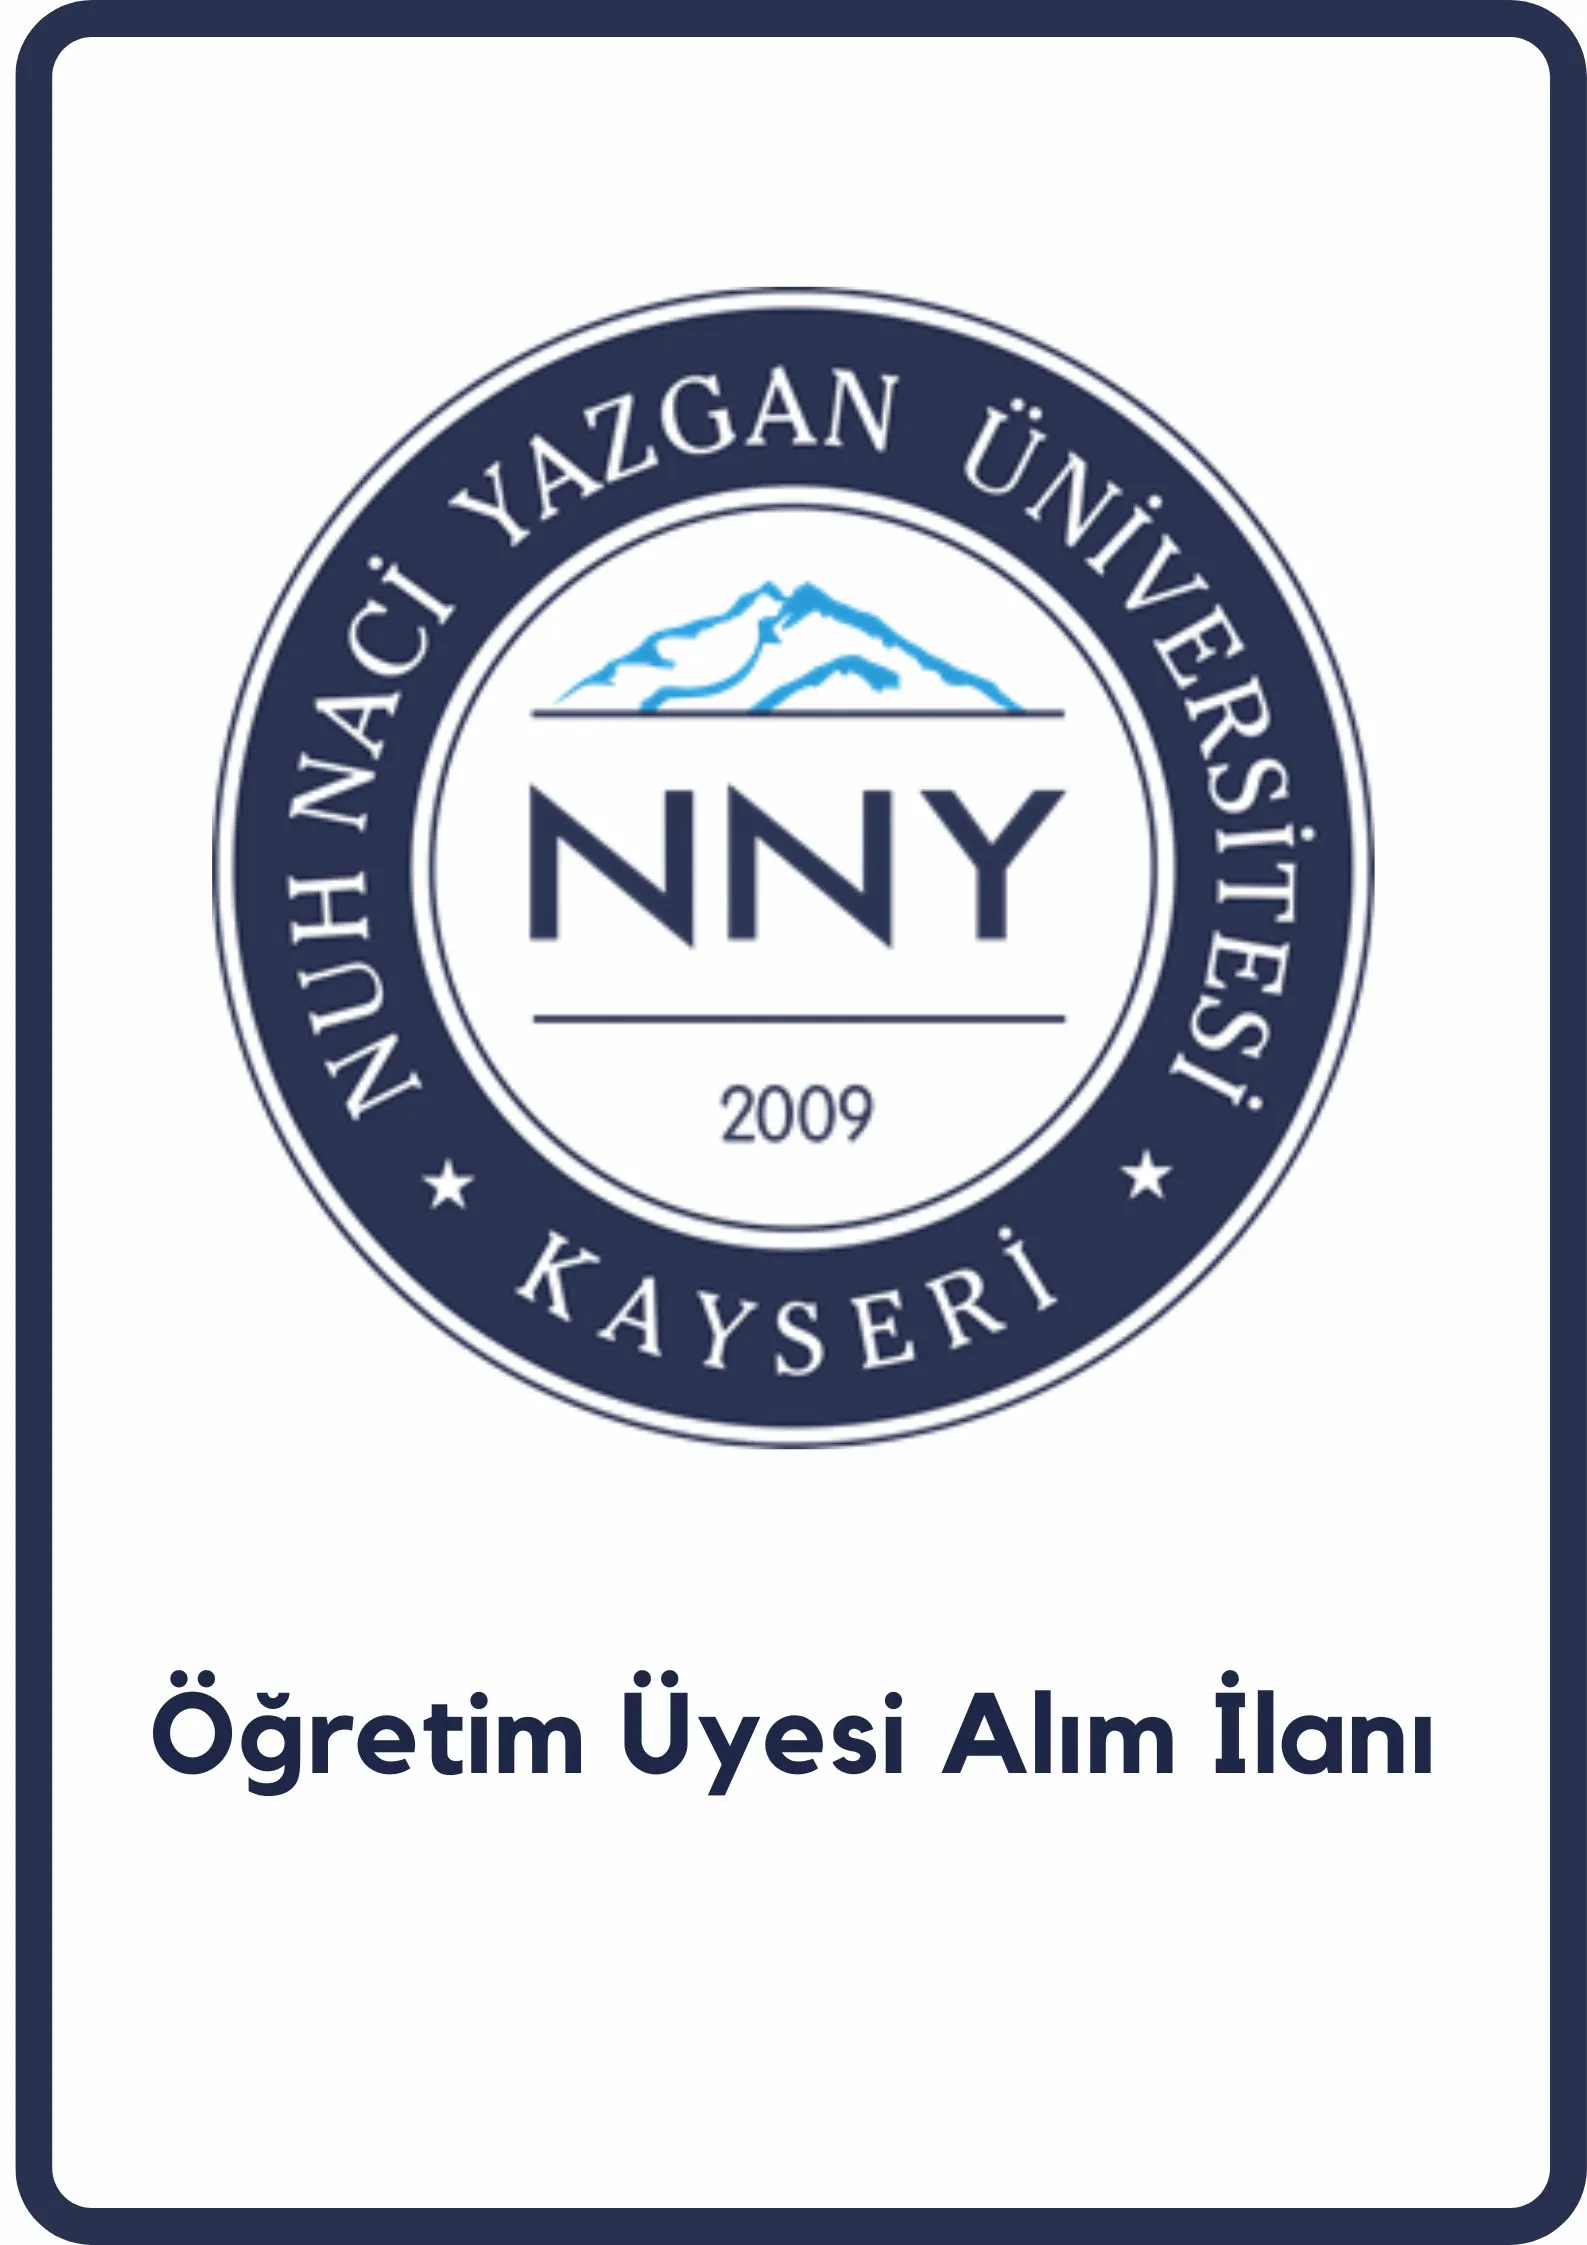 Nuh Naci Yazgan Üniversitesi 3 öğretim üyesi alacak. Son başvuru tarihi 26 Ağustos 2022.